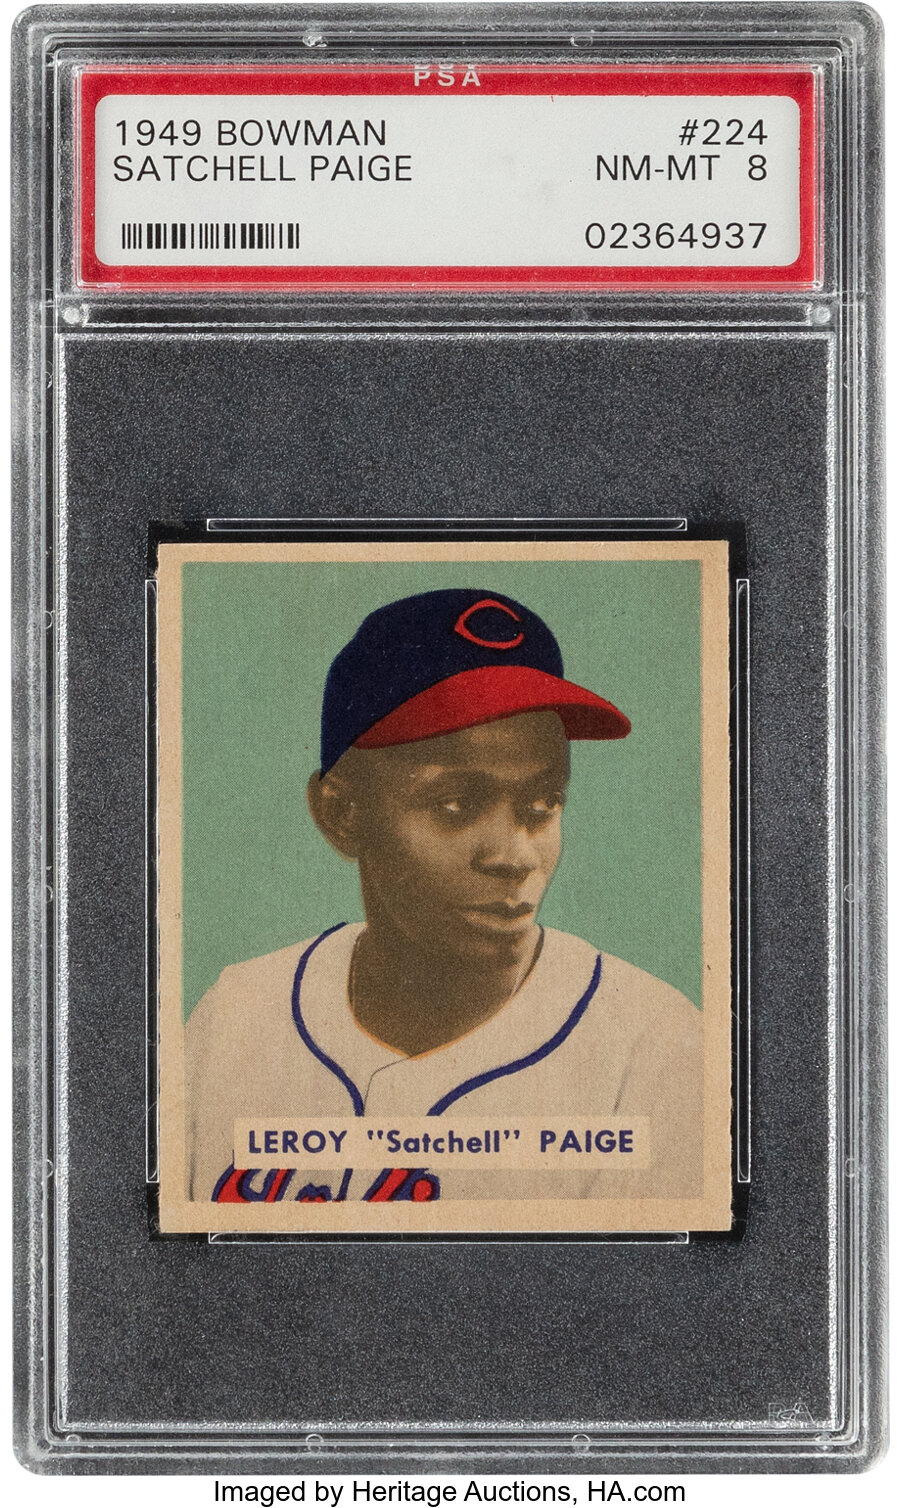 1949 Bowman Satchell Paige #224 PSA NM-MT 8